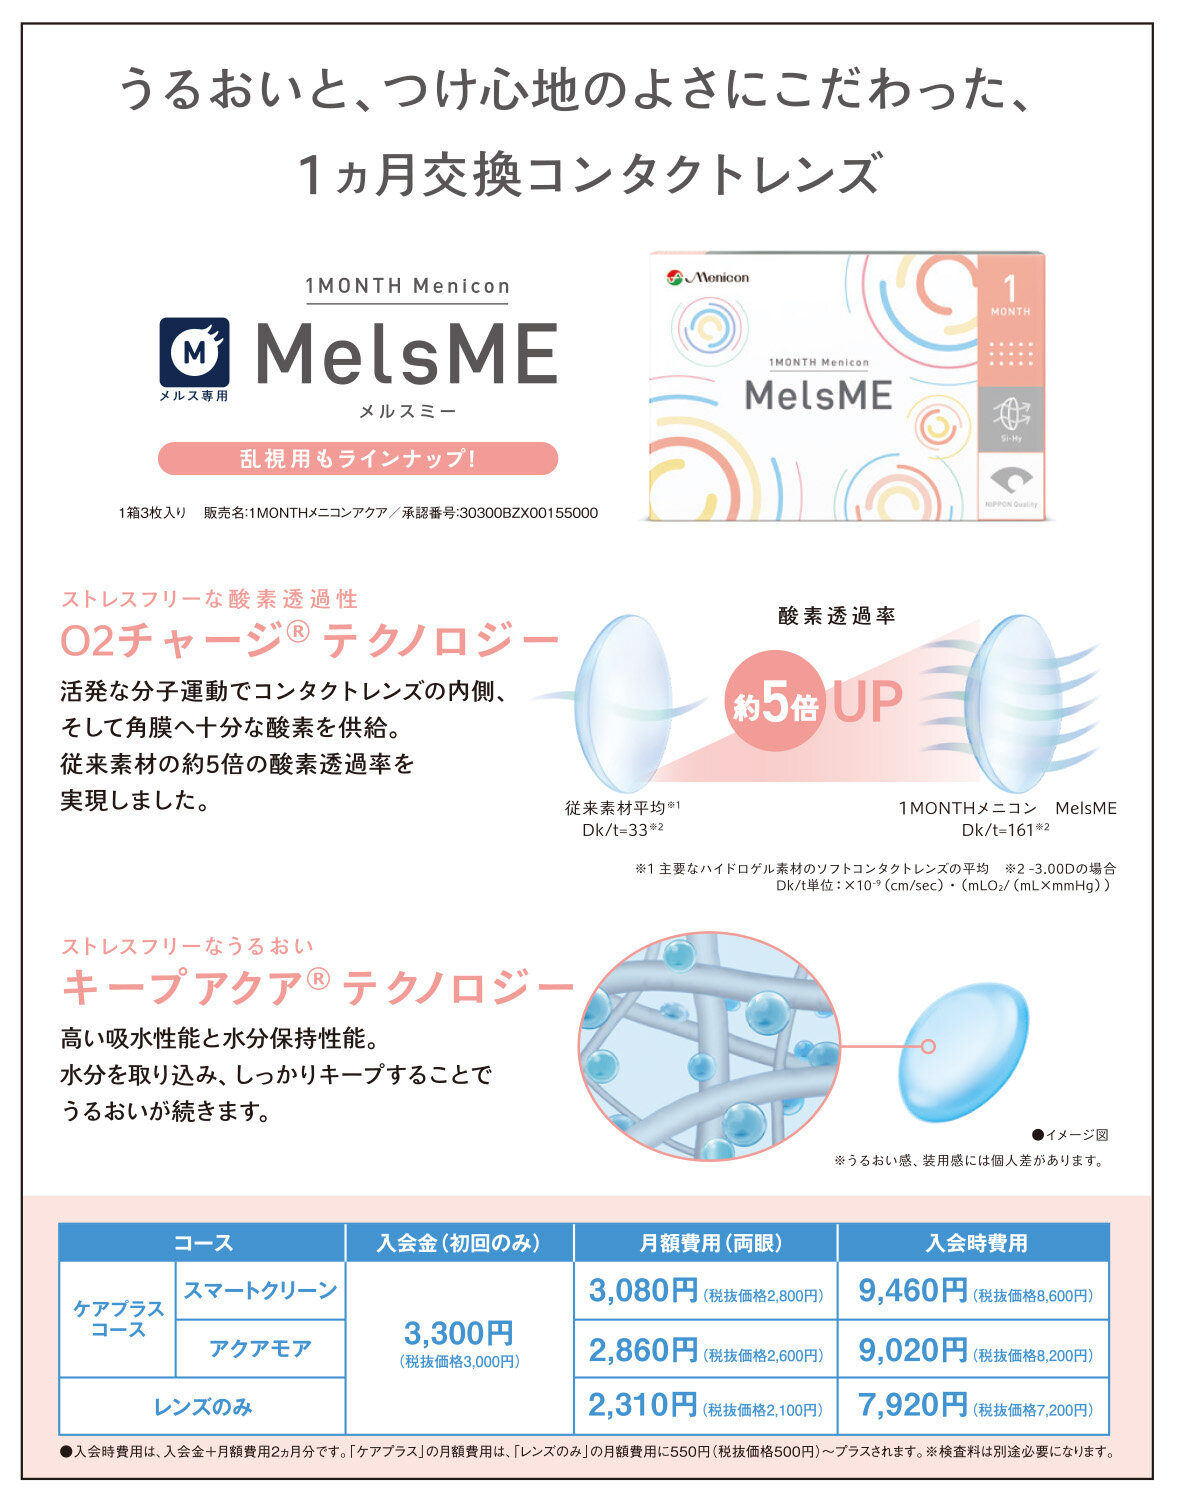 MelsME_02.jpg